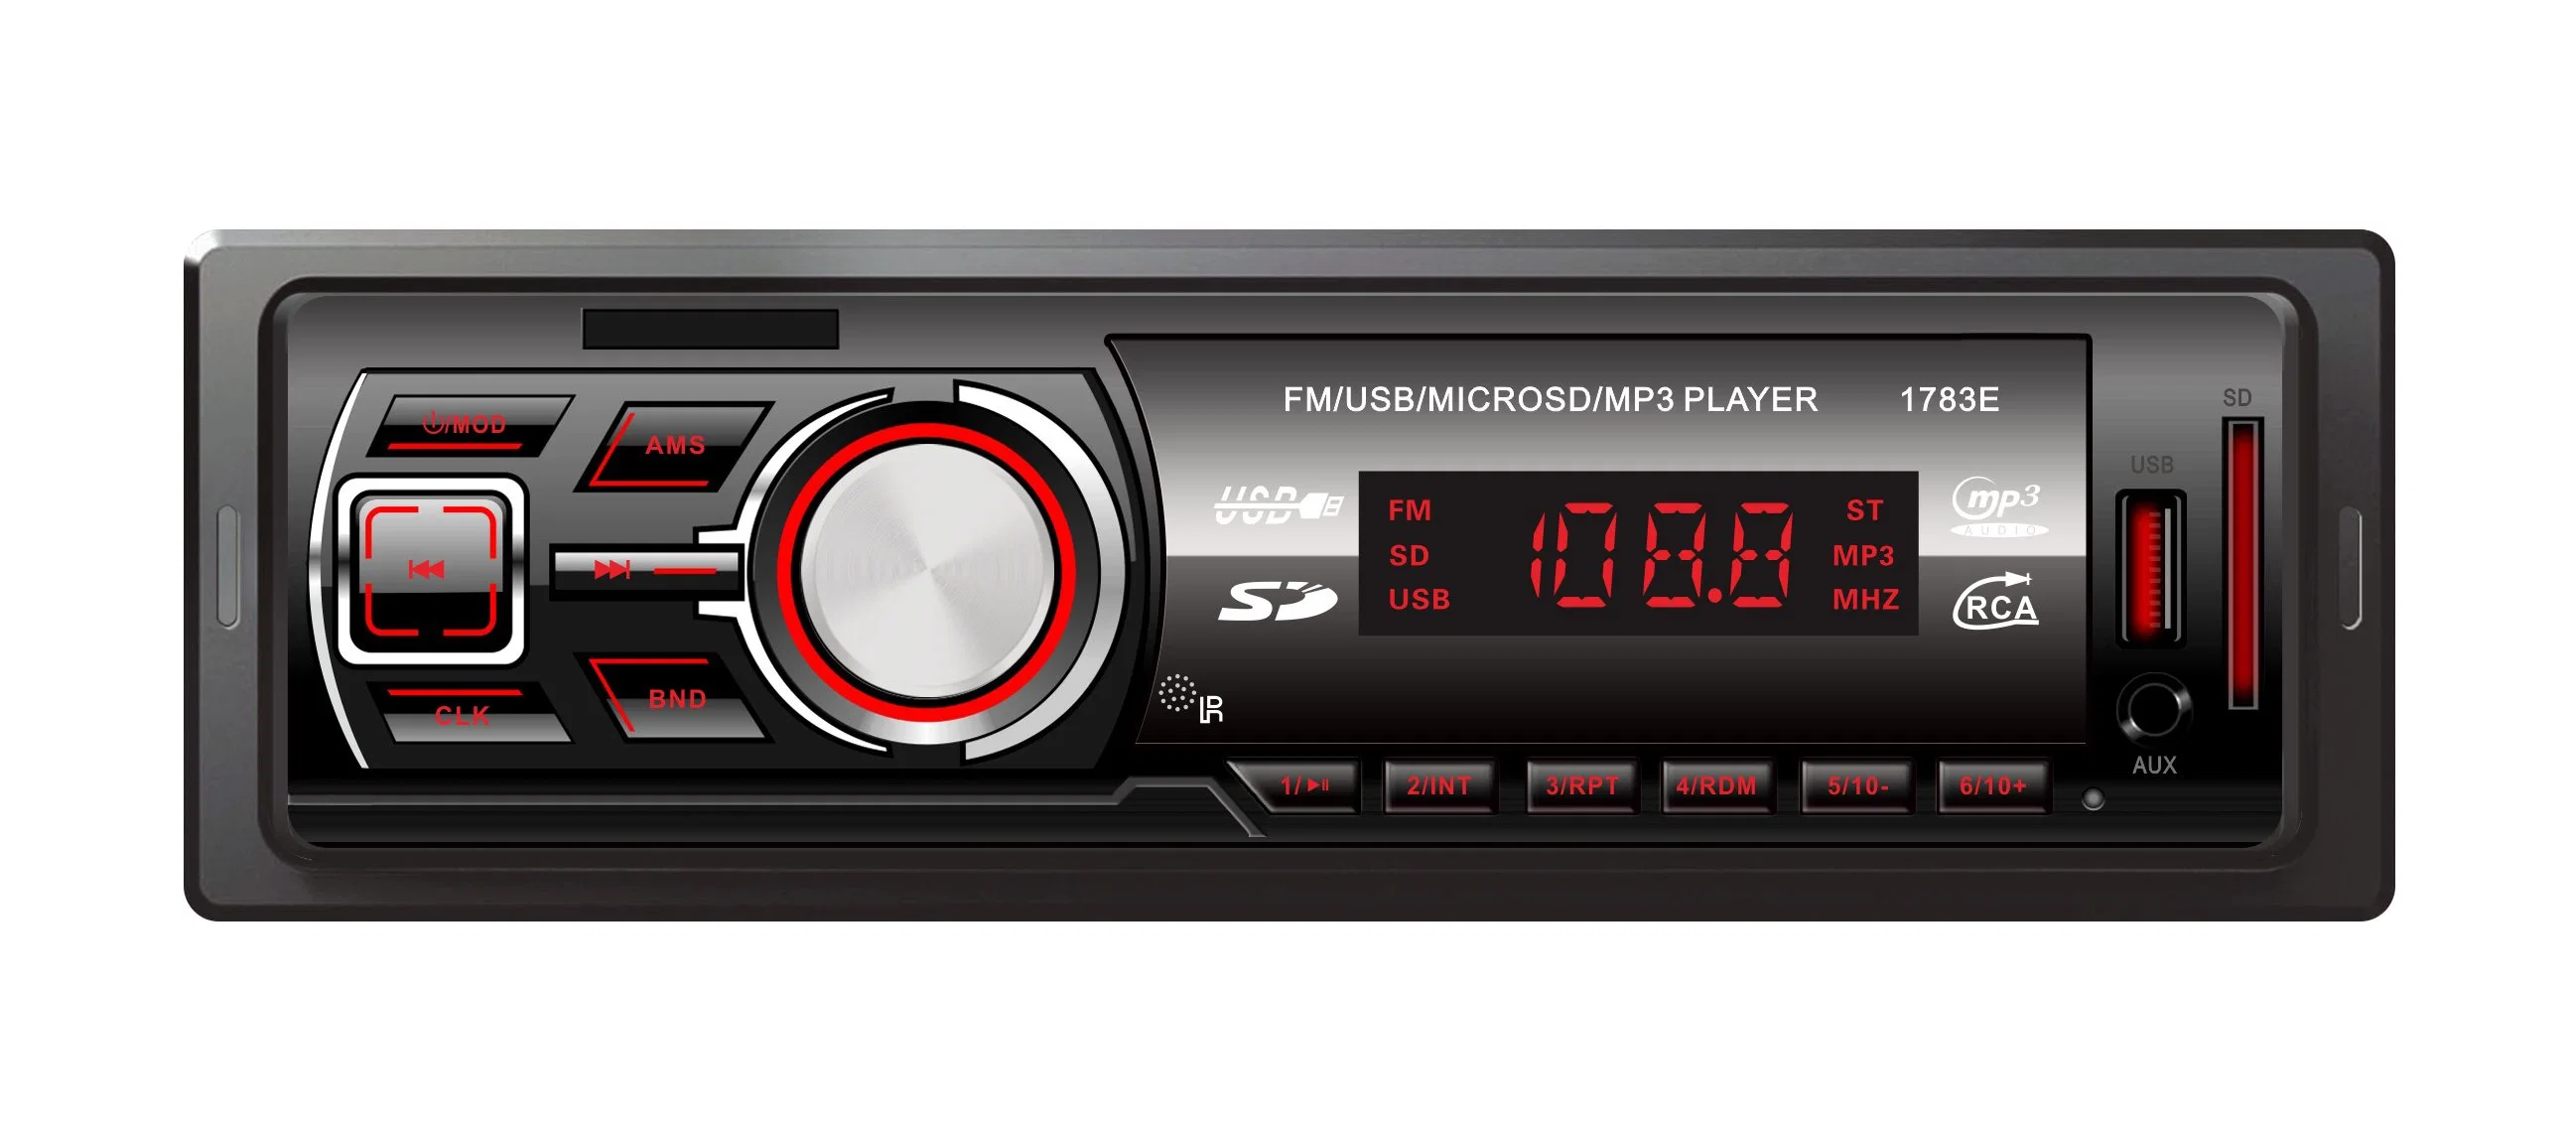 Receptor multimédia digital Car Audio Leitor de MP3 Electronics